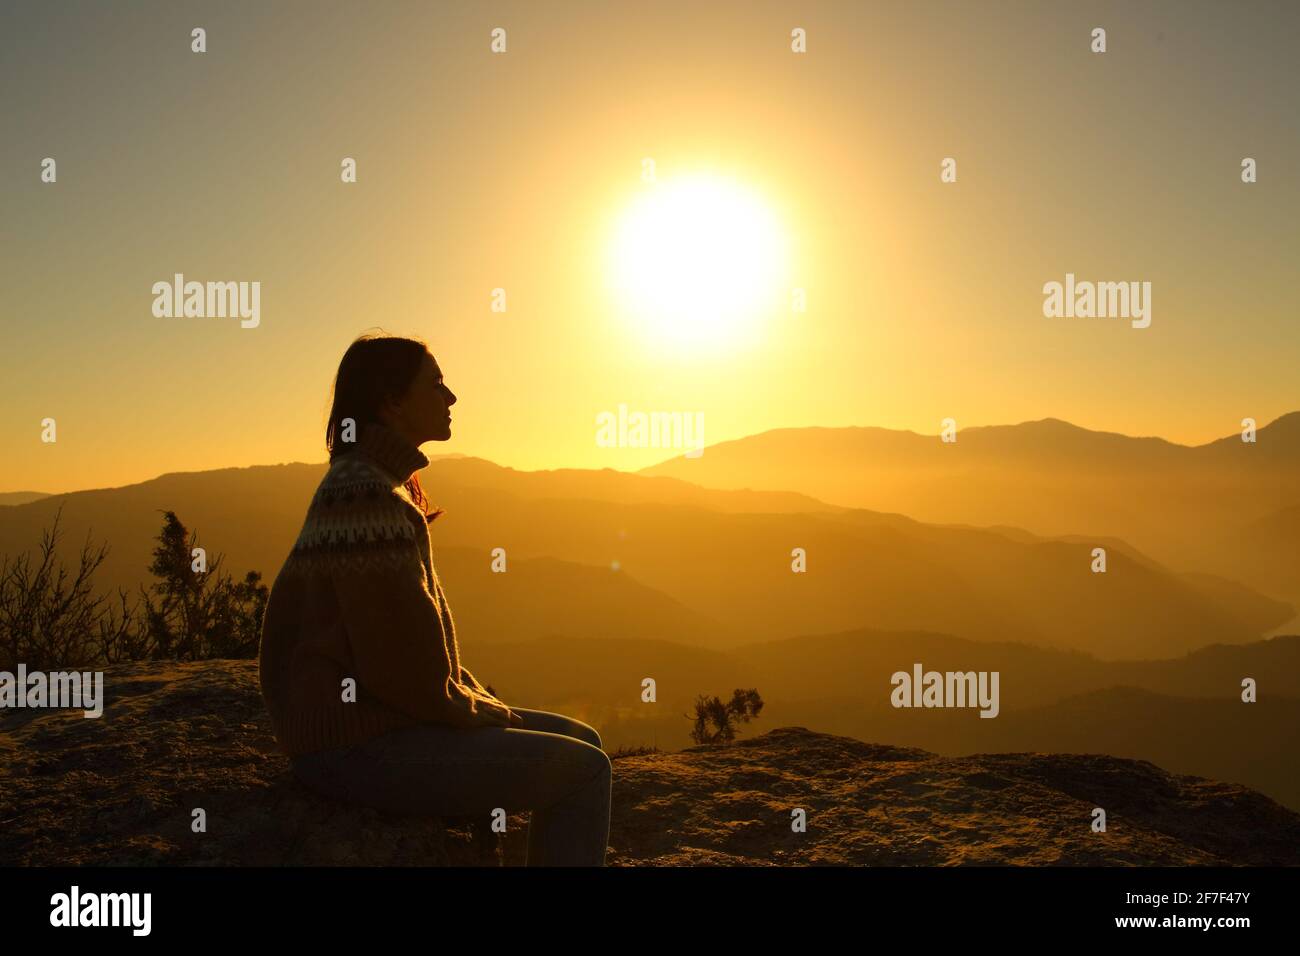 Vue latérale d'une silhouette de femme en train de contempler nature au coucher du soleil Banque D'Images